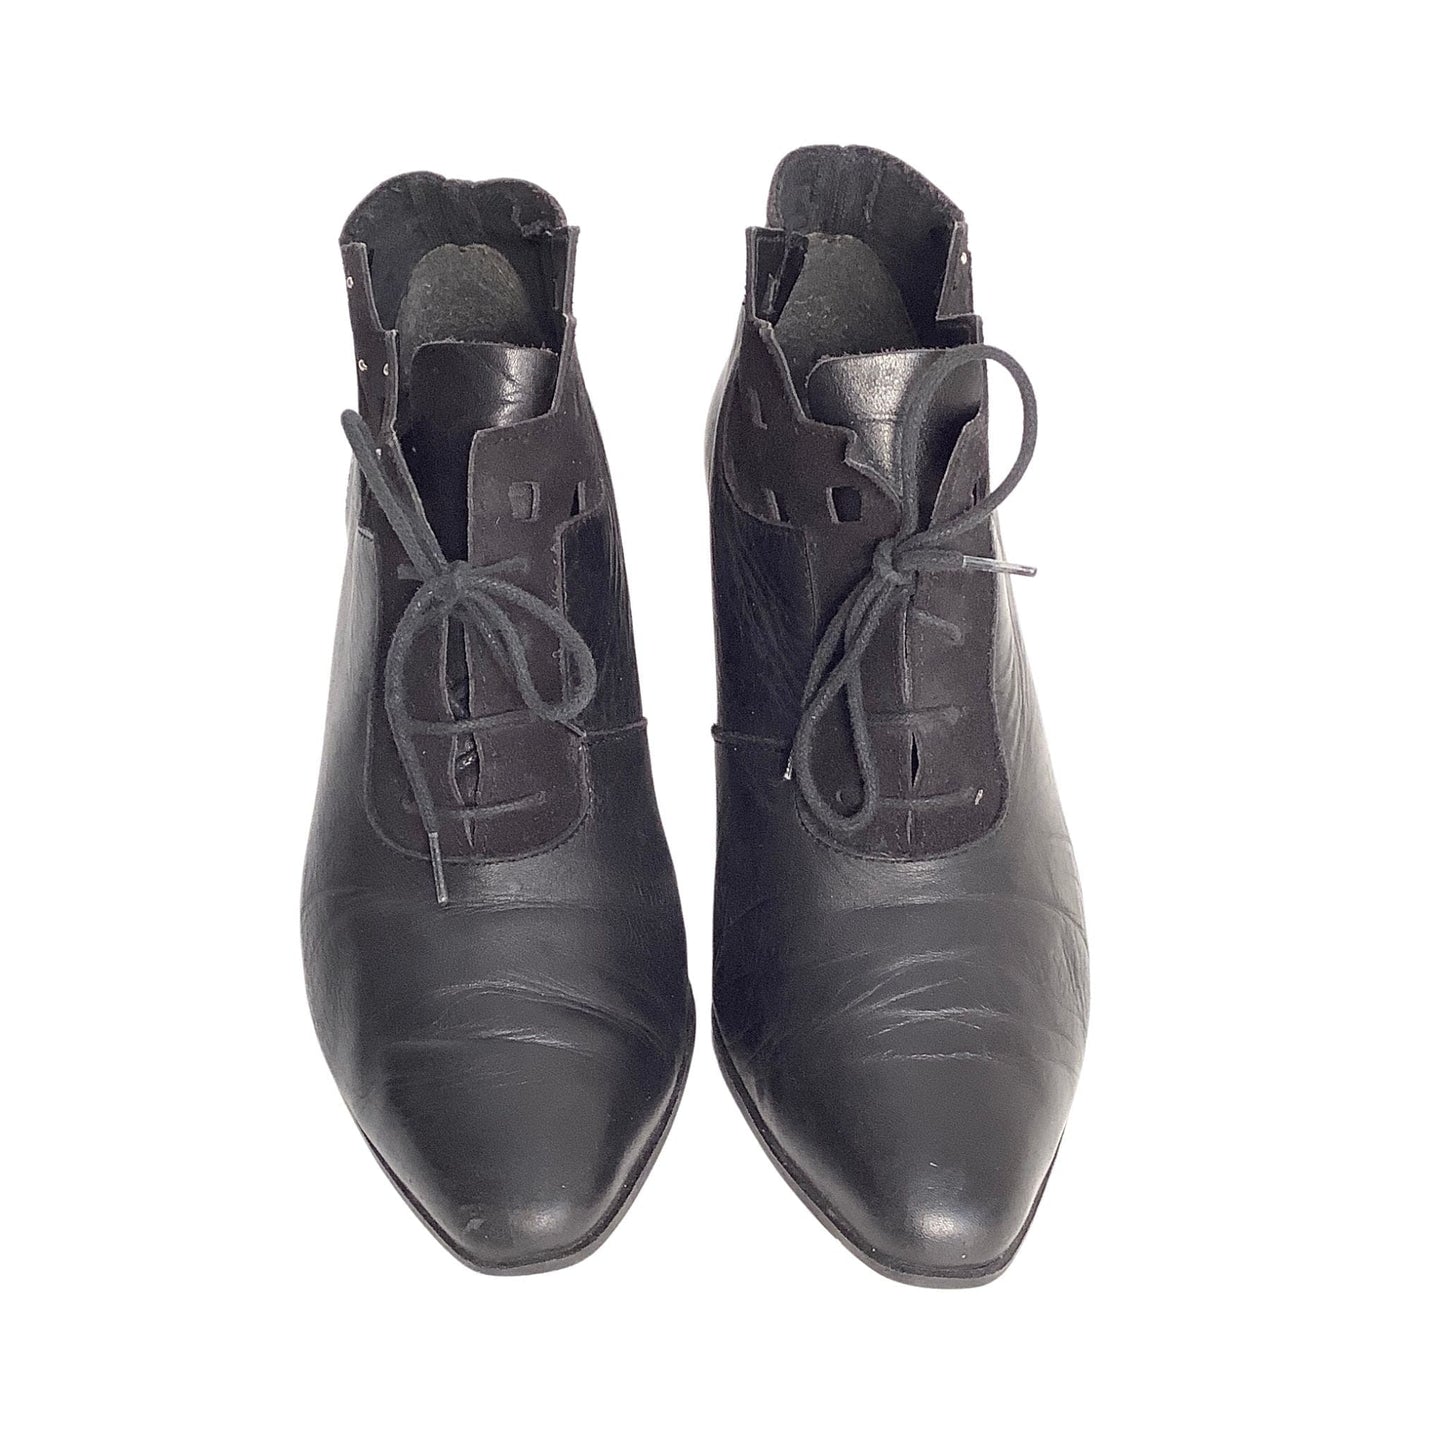 Vintage Granny Ankle Boots 7 / Black / Vintage 1980s